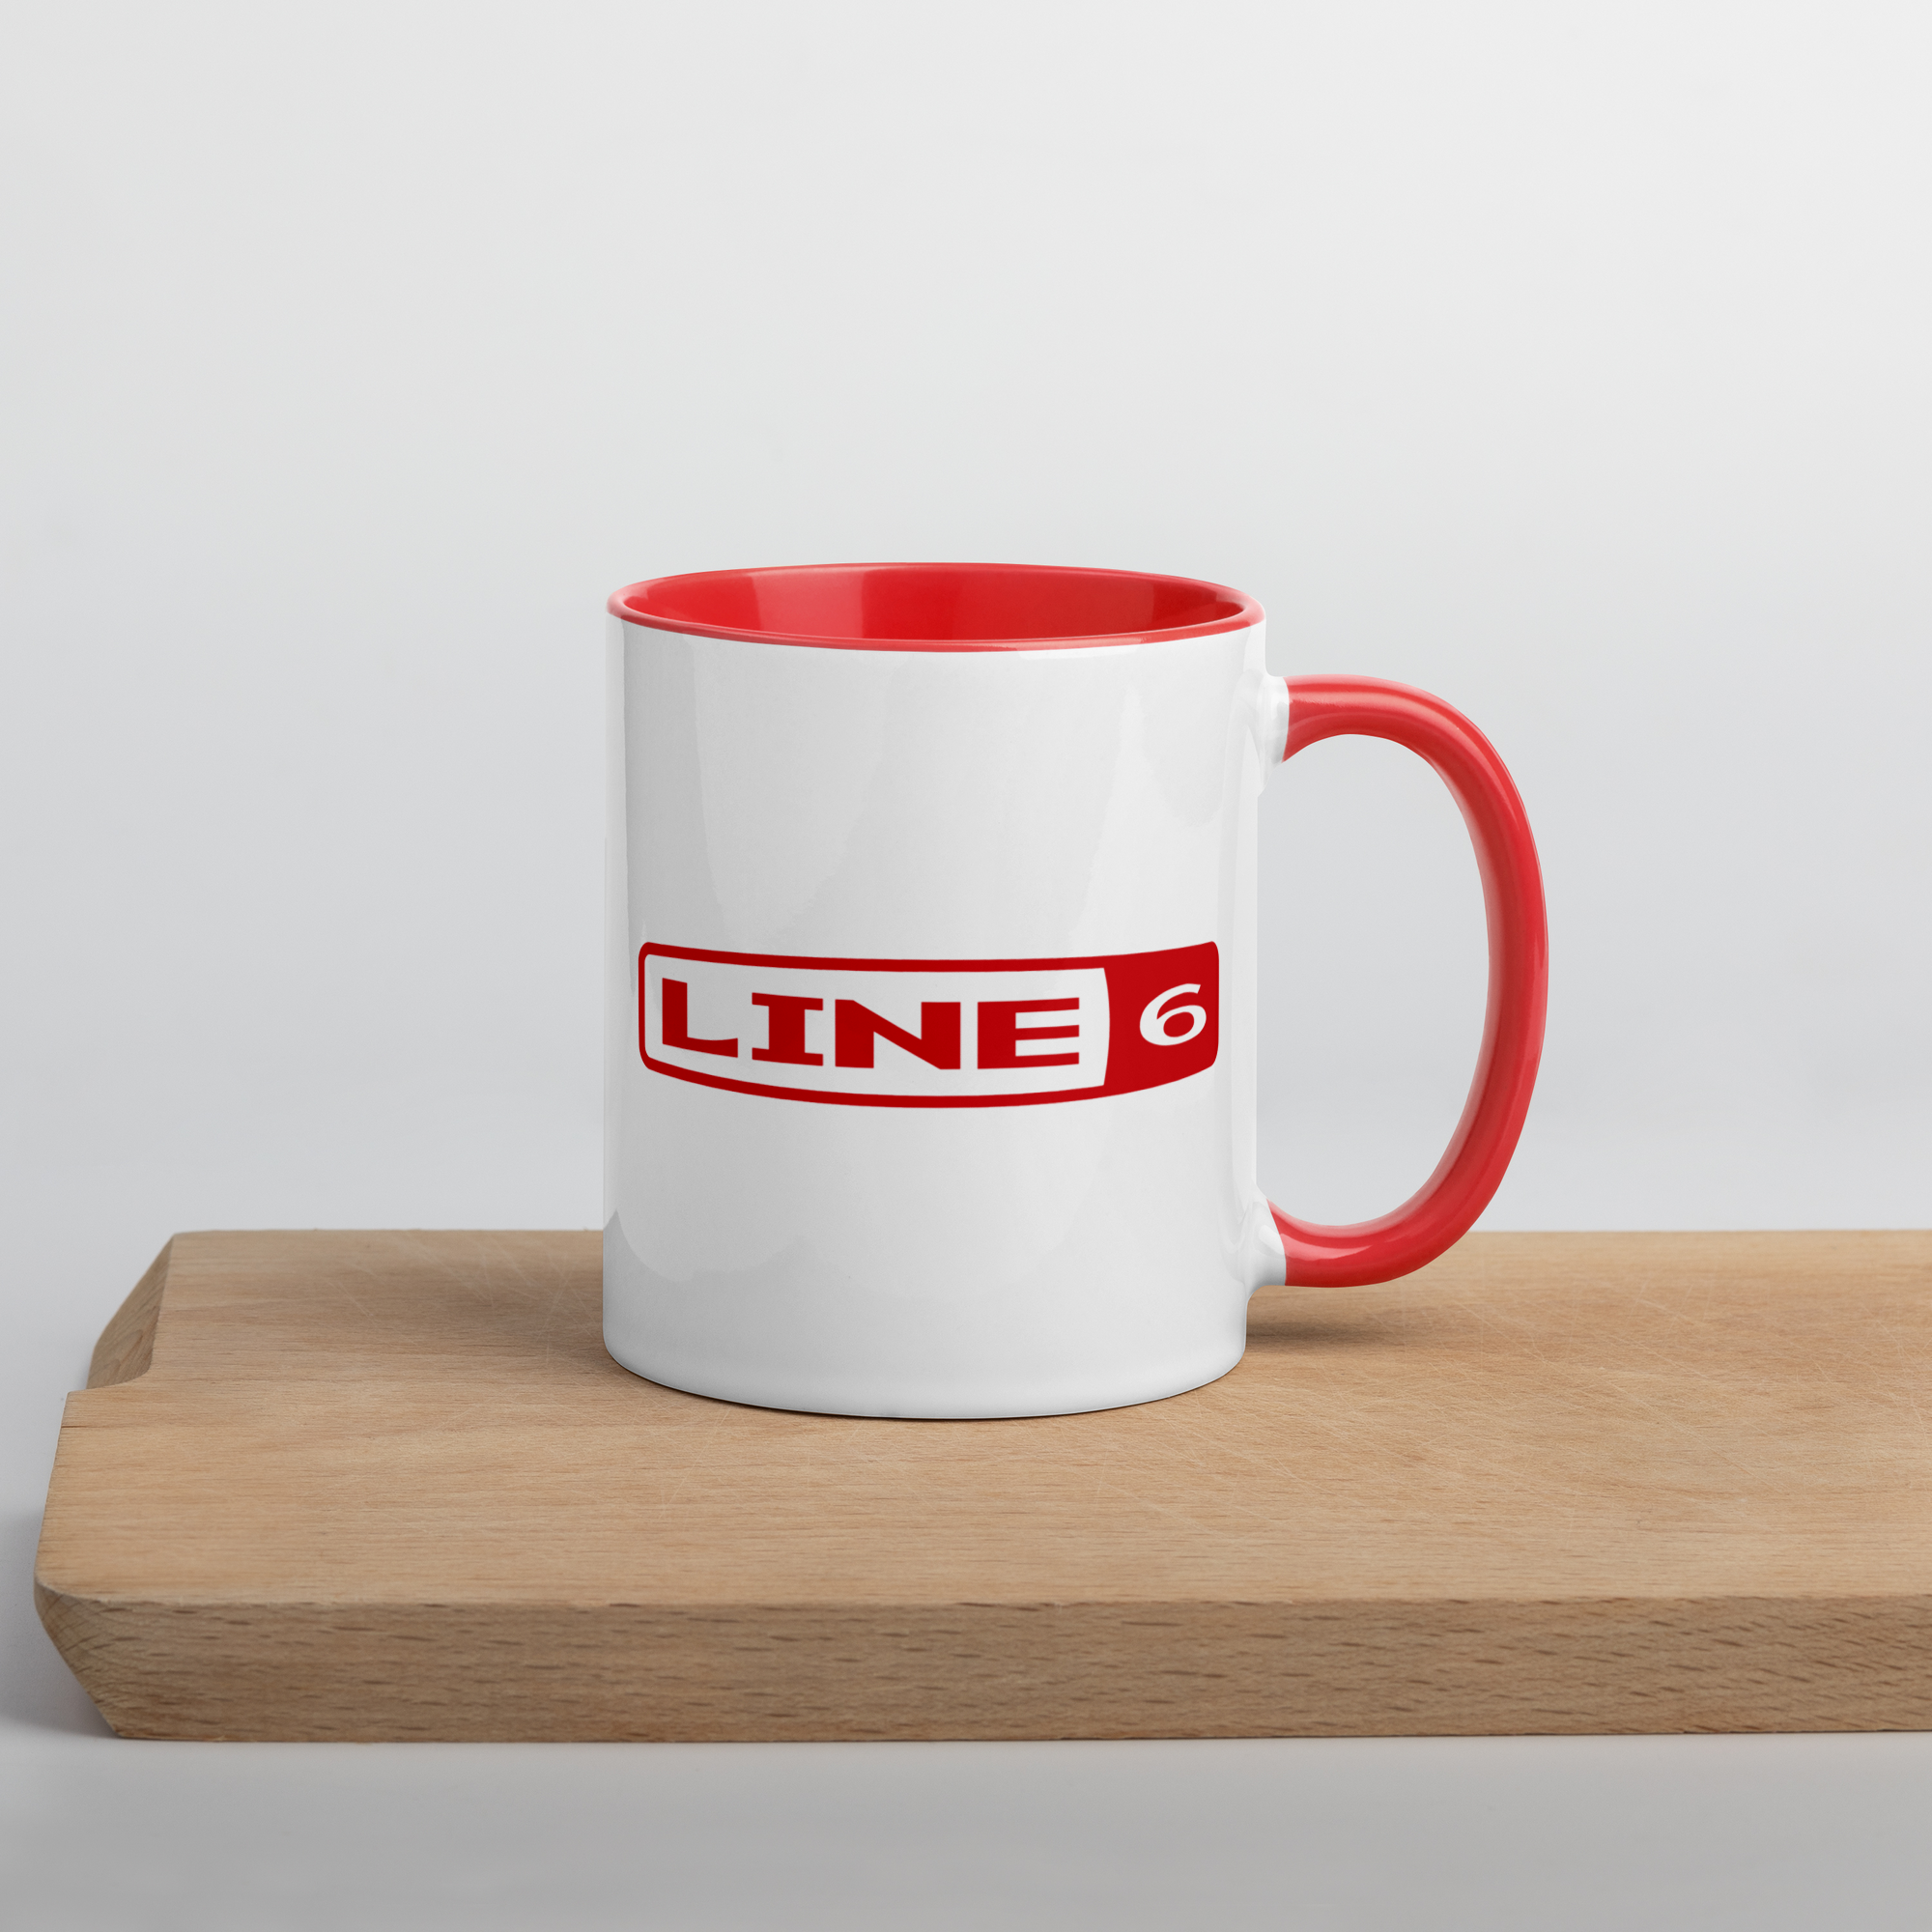 Line 6 Vintage Logo Mug - Red - Photo 9